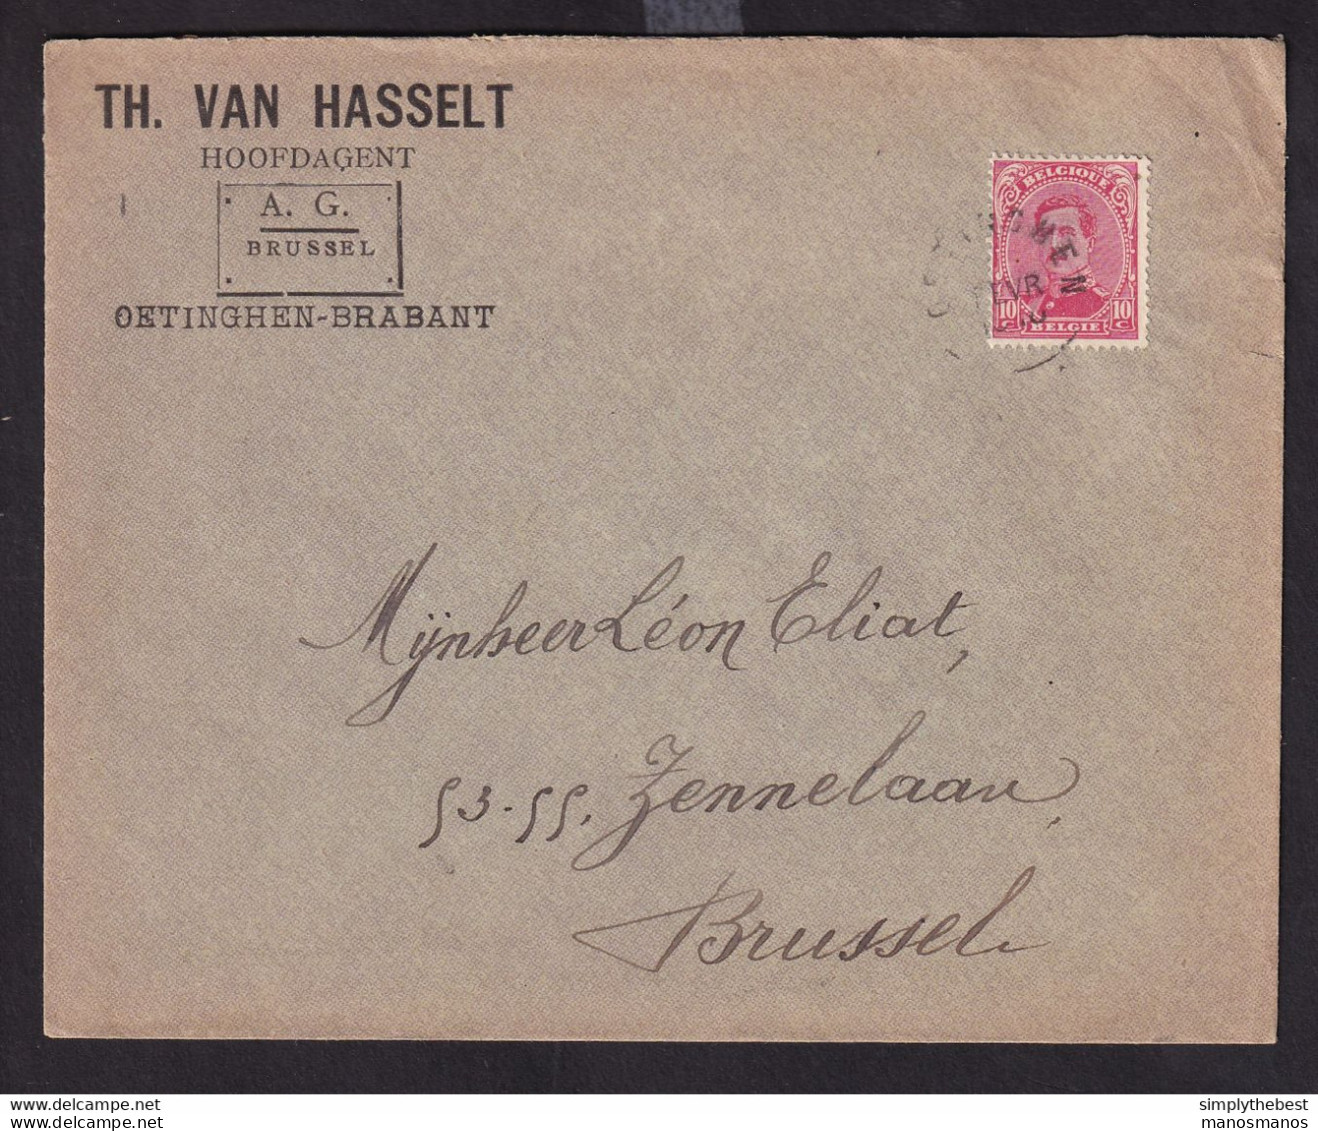 38/090 - FORTUNE 1919 - Enveloppe TP Albert Cachet Electoral OETINGHEN (Brabant) - Entete Van Hasselt , Verzekeringen - Foruna (1919)